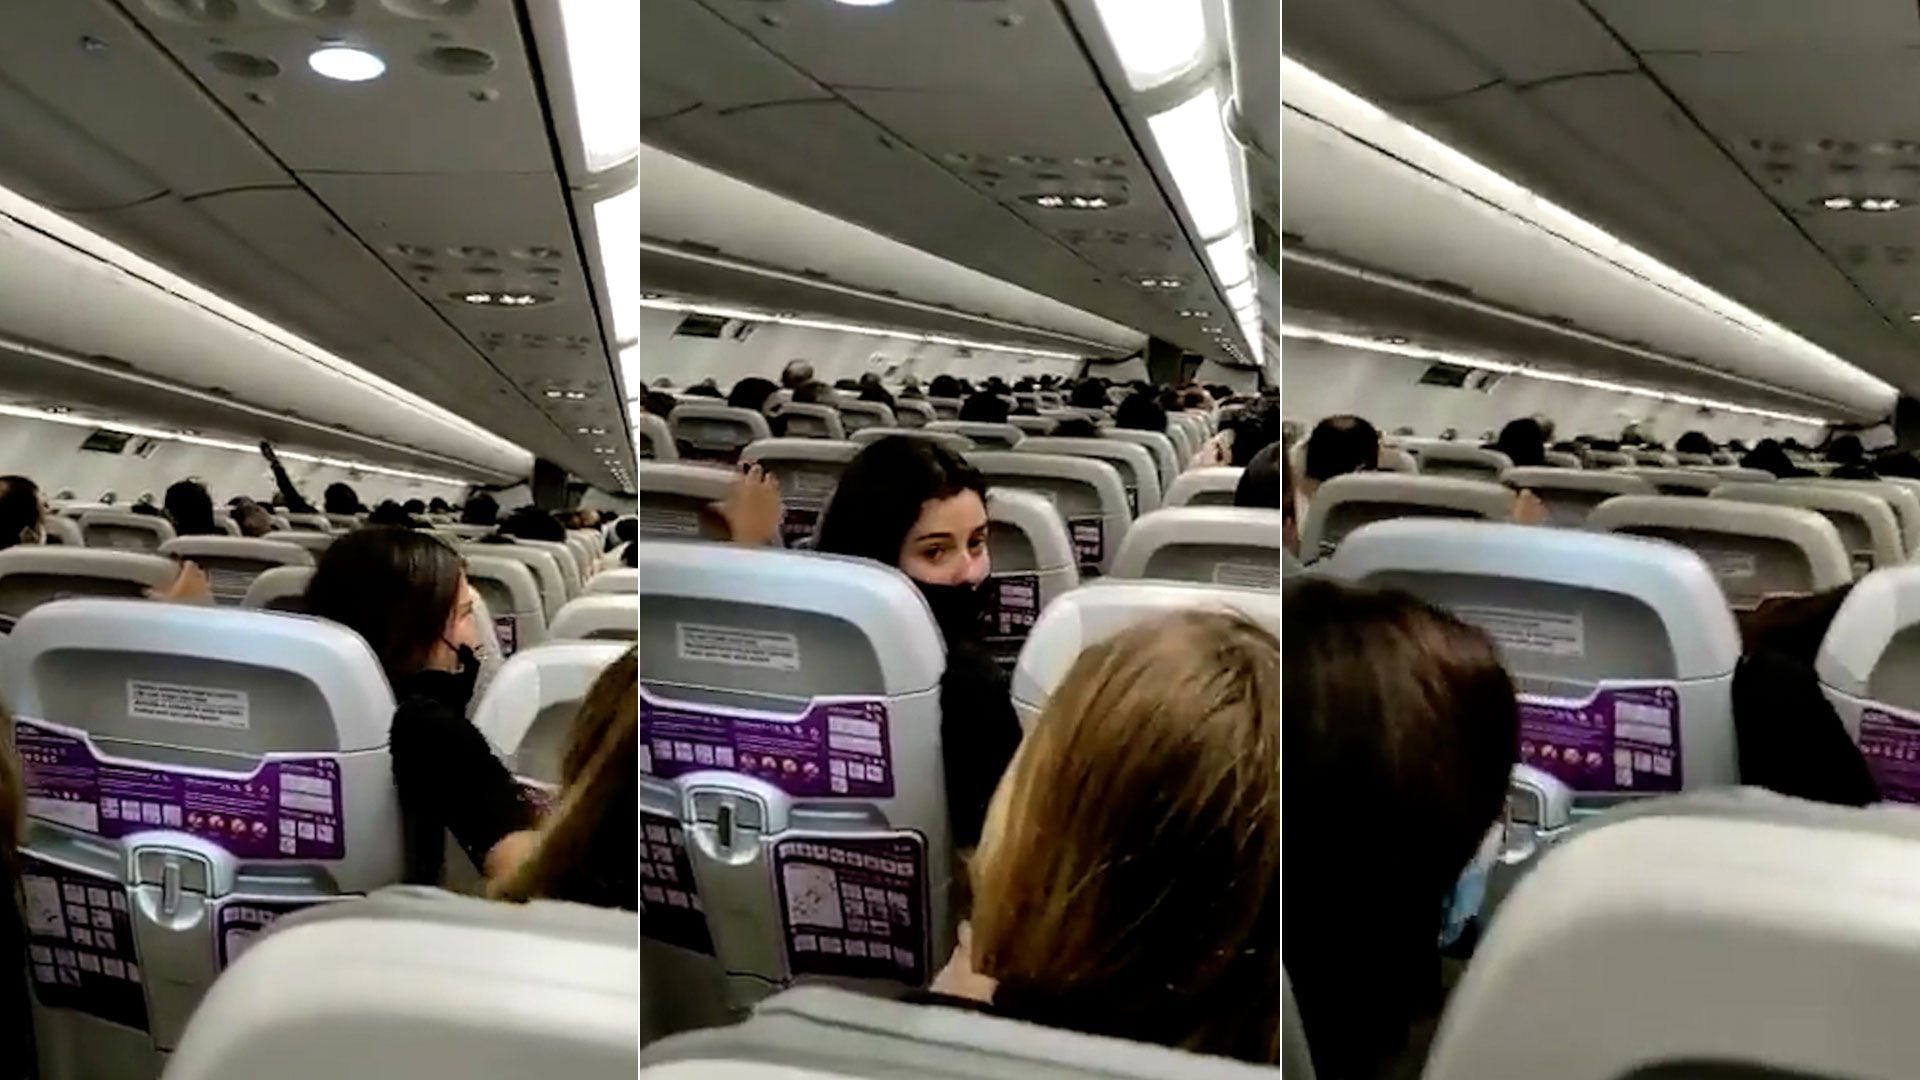 “Pensé que me iba a morir”: video viral registró las fuertes turbulencias en un vuelo mientras cruzaba la cordillera entre Argentina y Chile